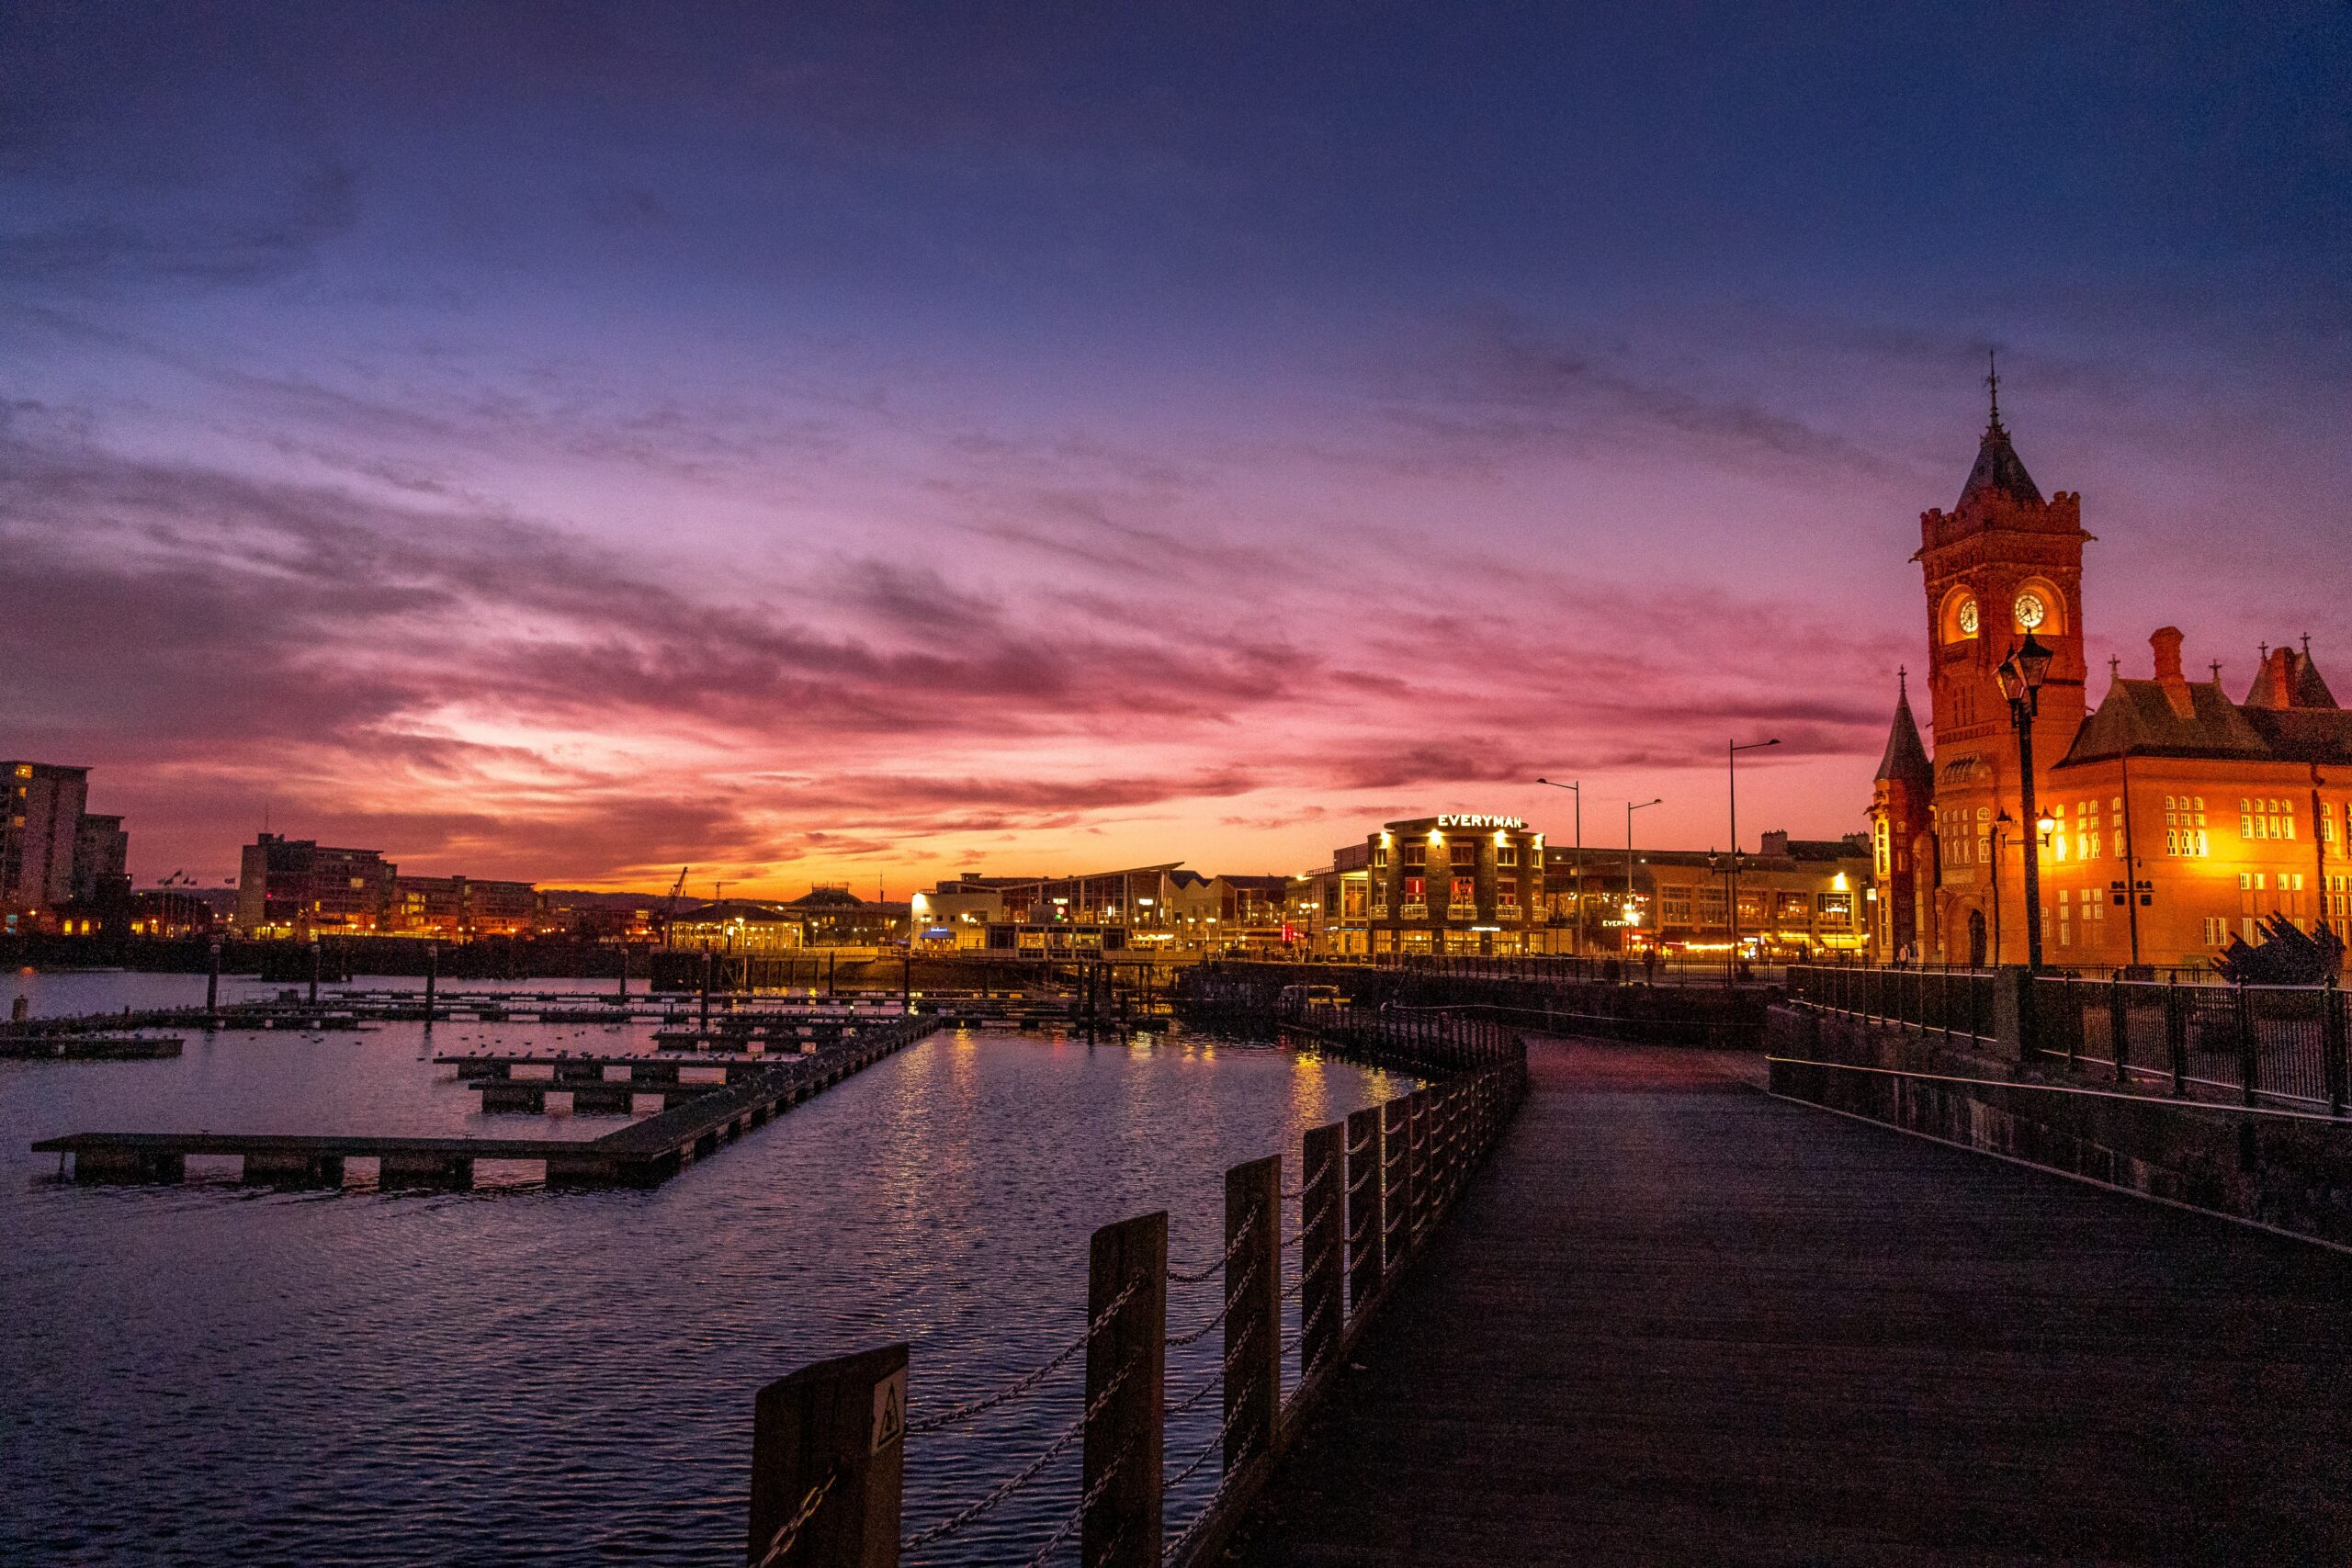 Cardiff Marina at dusk.